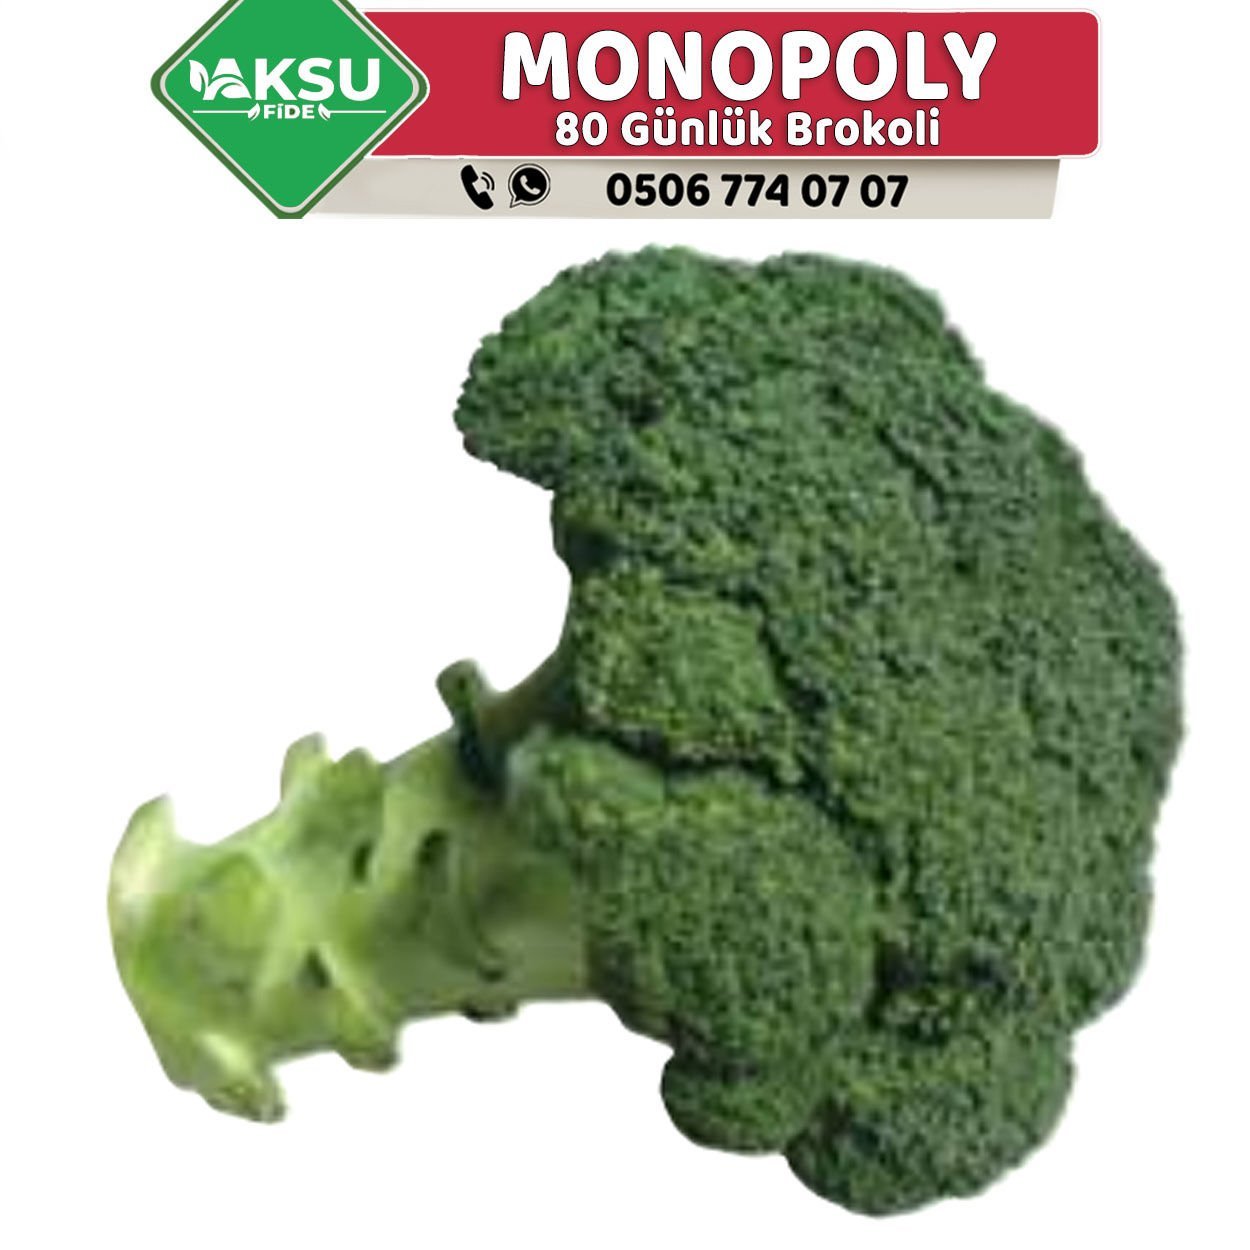 Monopoly 80 Günlük Brokoli Fidesi